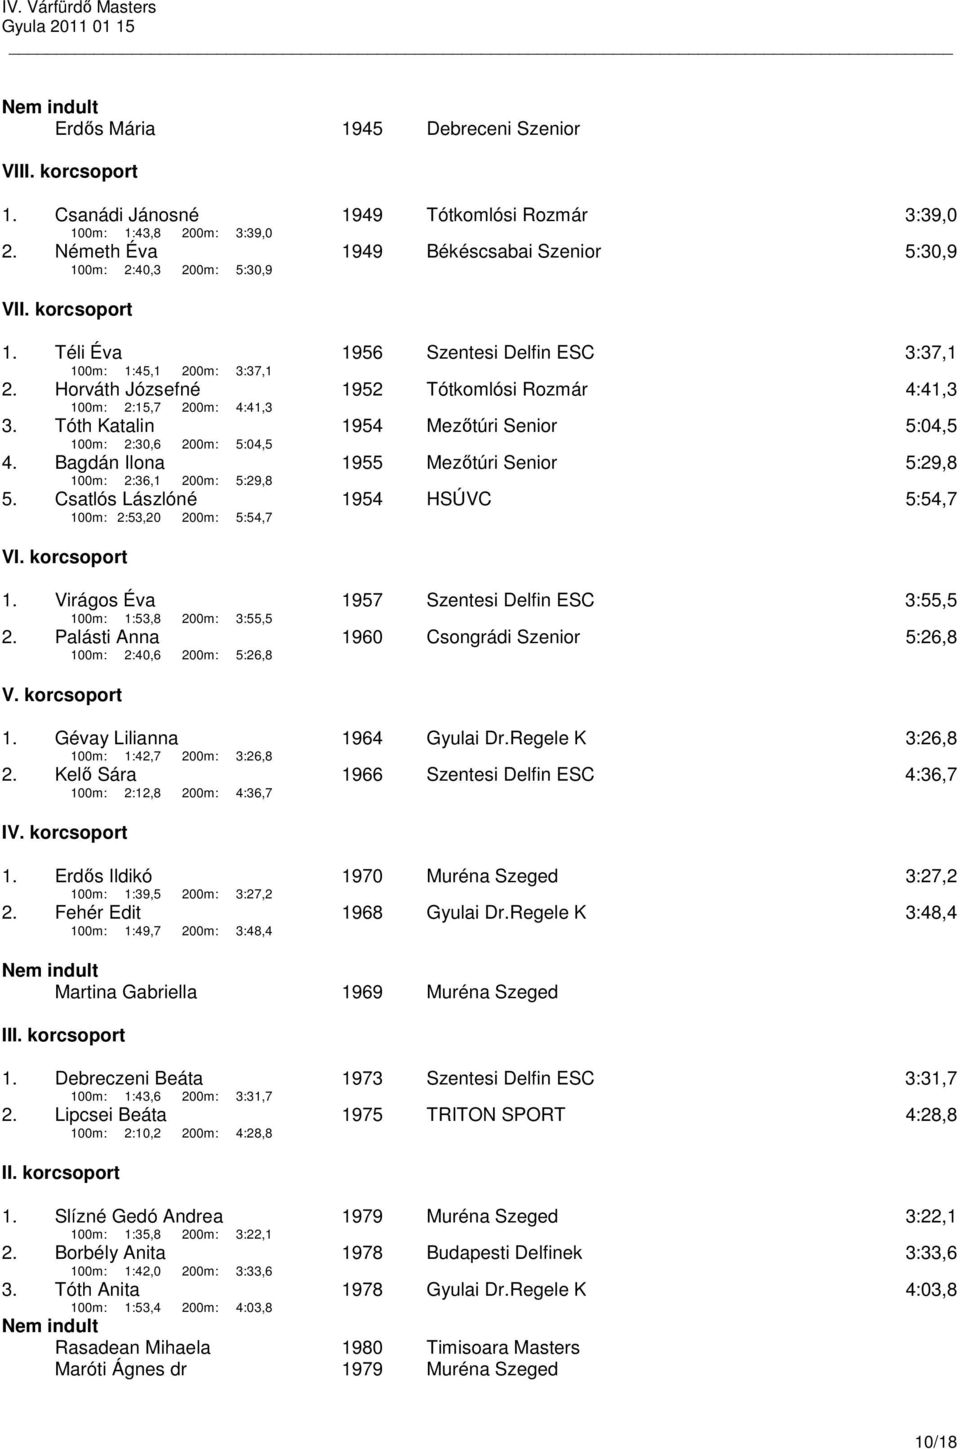 Tóth Katalin 1954 Mezőtúri Senior 5:04,5 100m: 2:30,6 200m: 5:04,5 4. Bagdán Ilona 1955 Mezőtúri Senior 5:29,8 100m: 2:36,1 200m: 5:29,8 5.